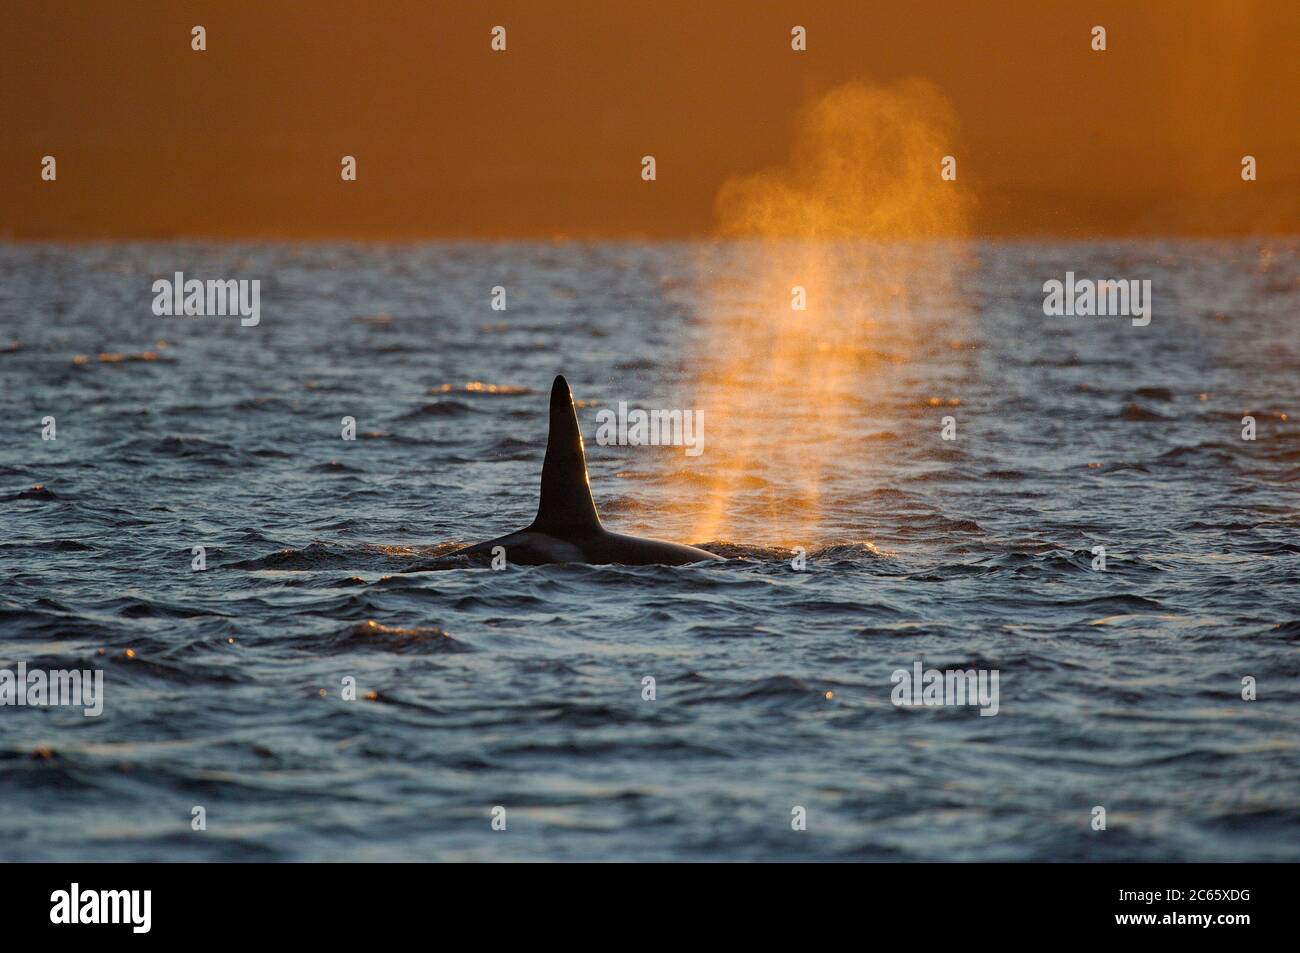 Orca ou Baleine noire (Orcinus orca) se nourrissant de hareng dans la région de Tysfjord (Norvège). Les orques mâles atteignent 7 m, tandis que les femelles mesurent 5 m de longueur, Banque D'Images